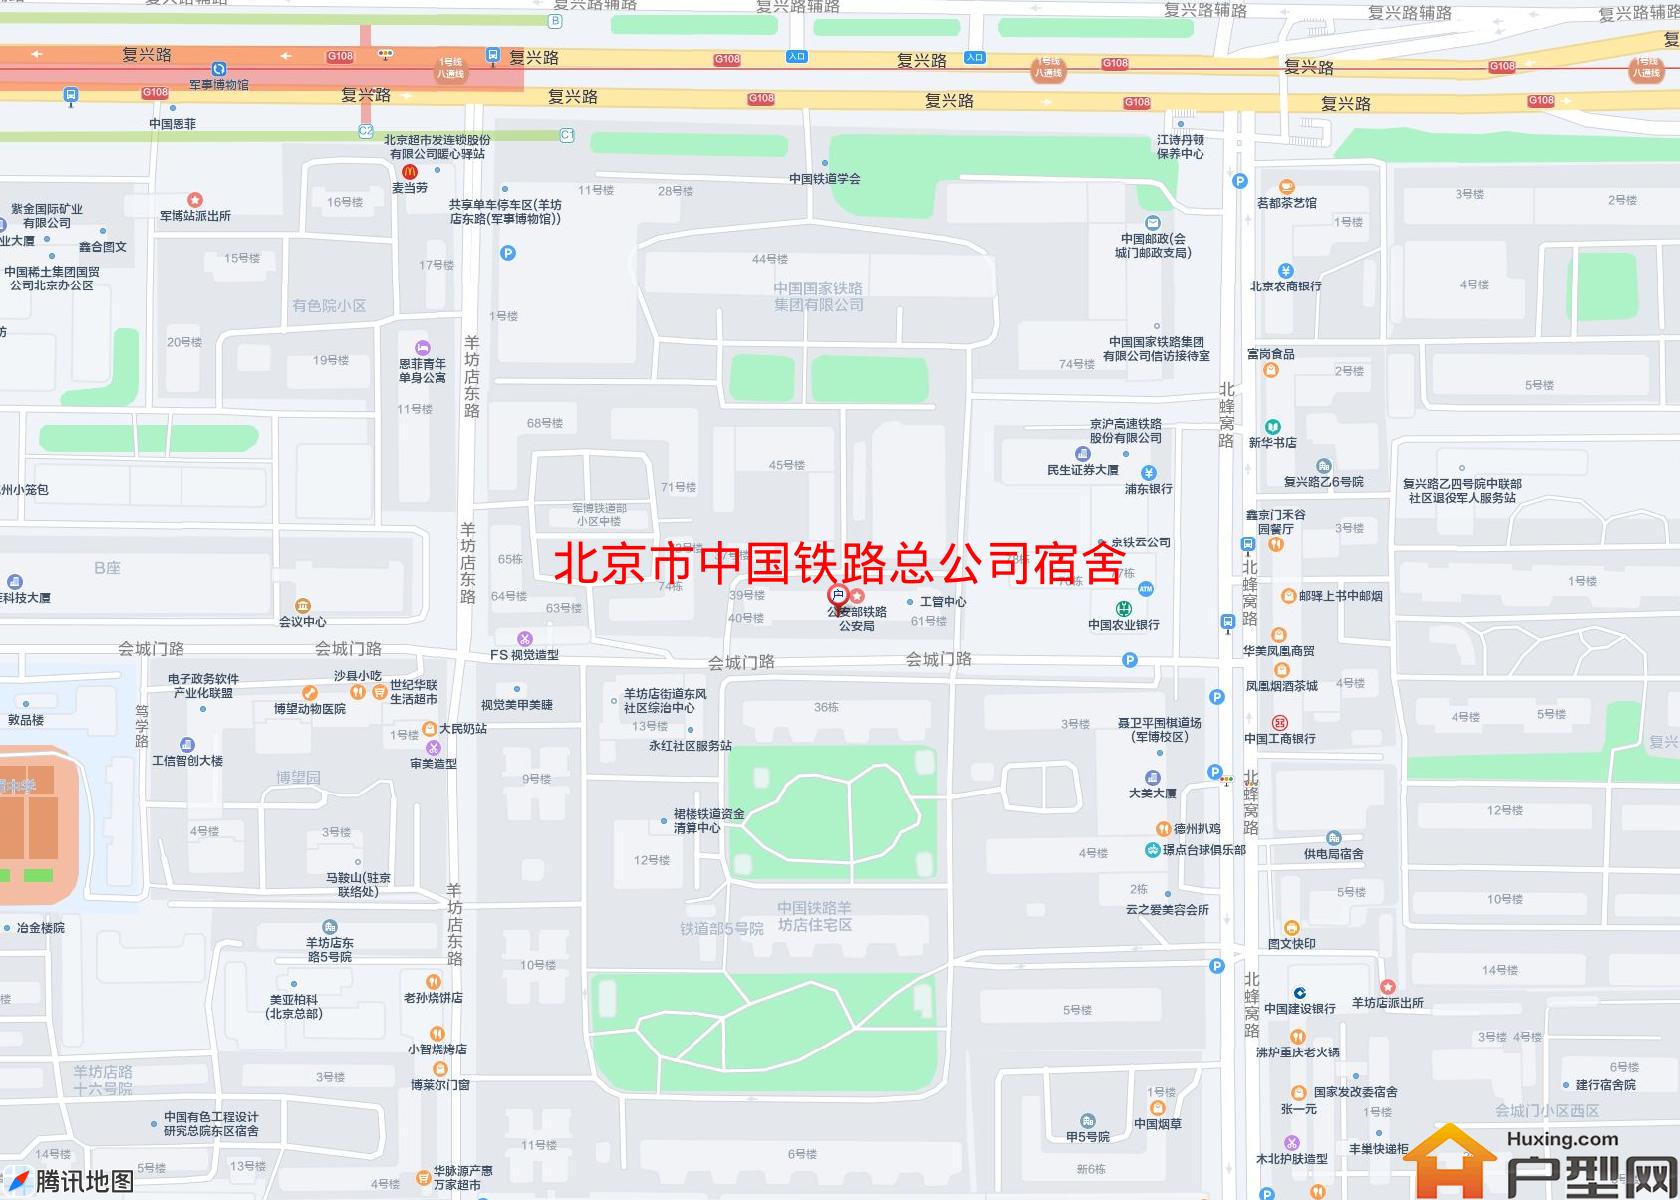 中国铁路总公司宿舍小区 - 户型网